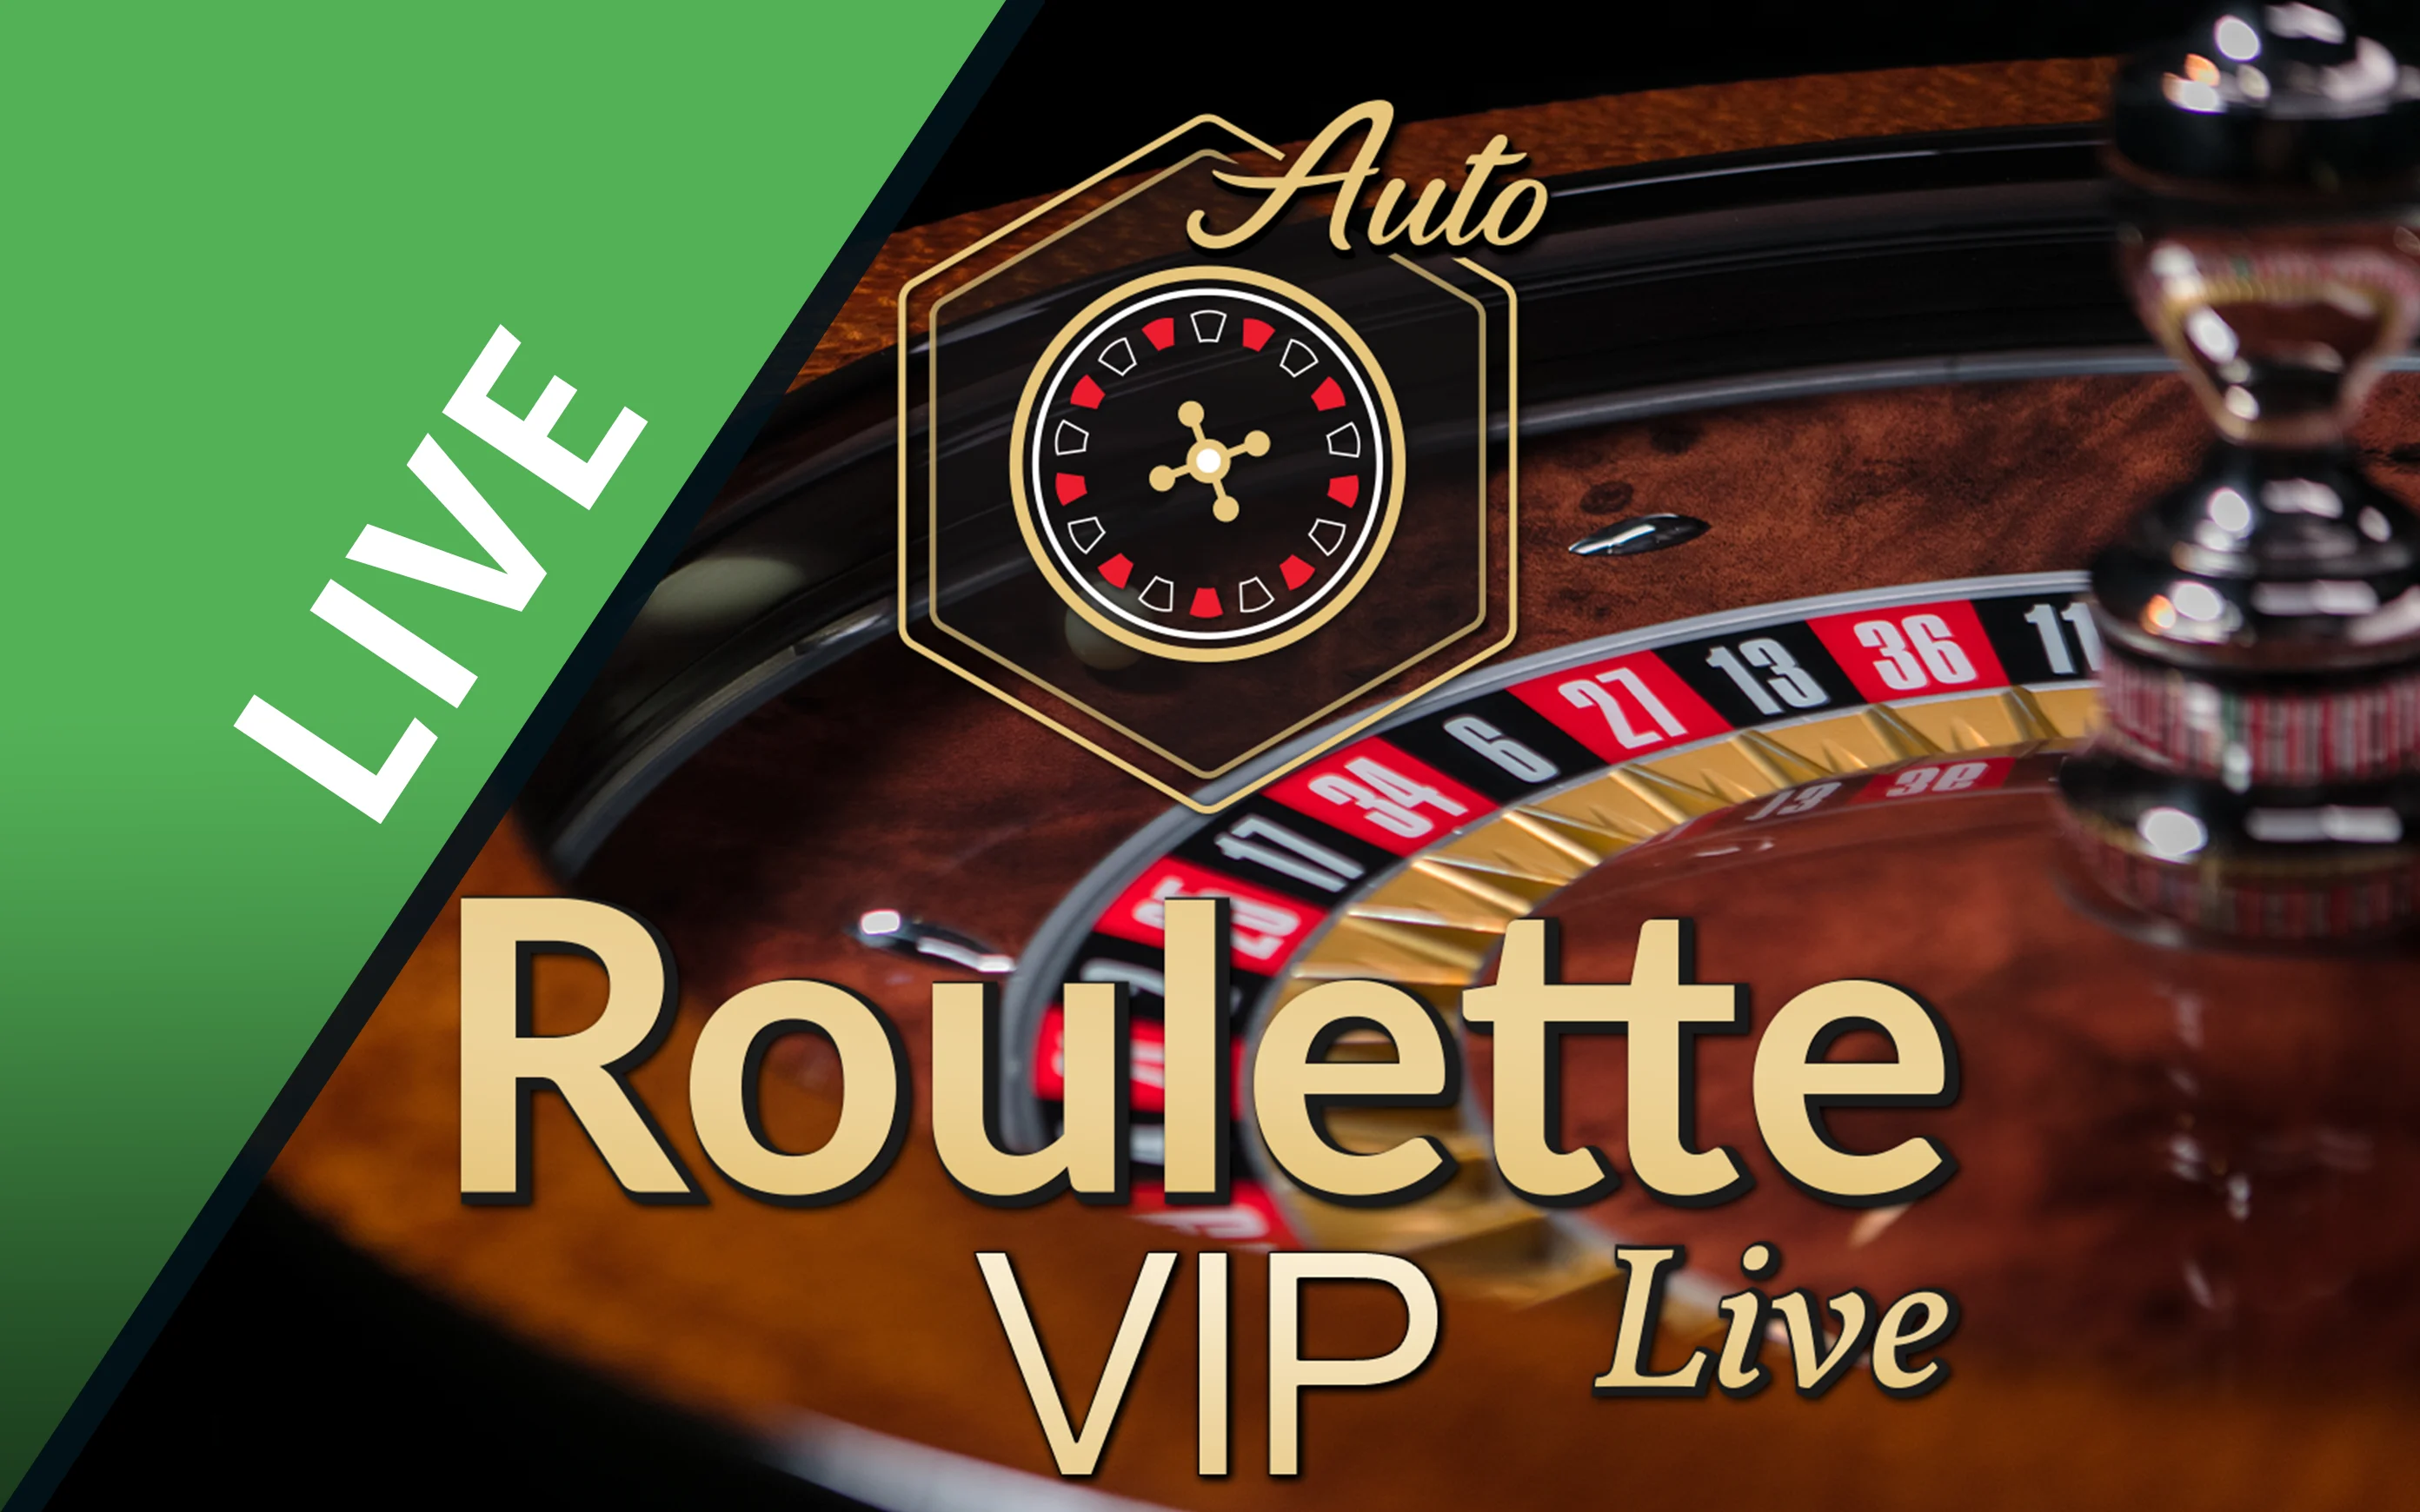 Chơi Auto Roulette VIP trên sòng bạc trực tuyến Starcasino.be